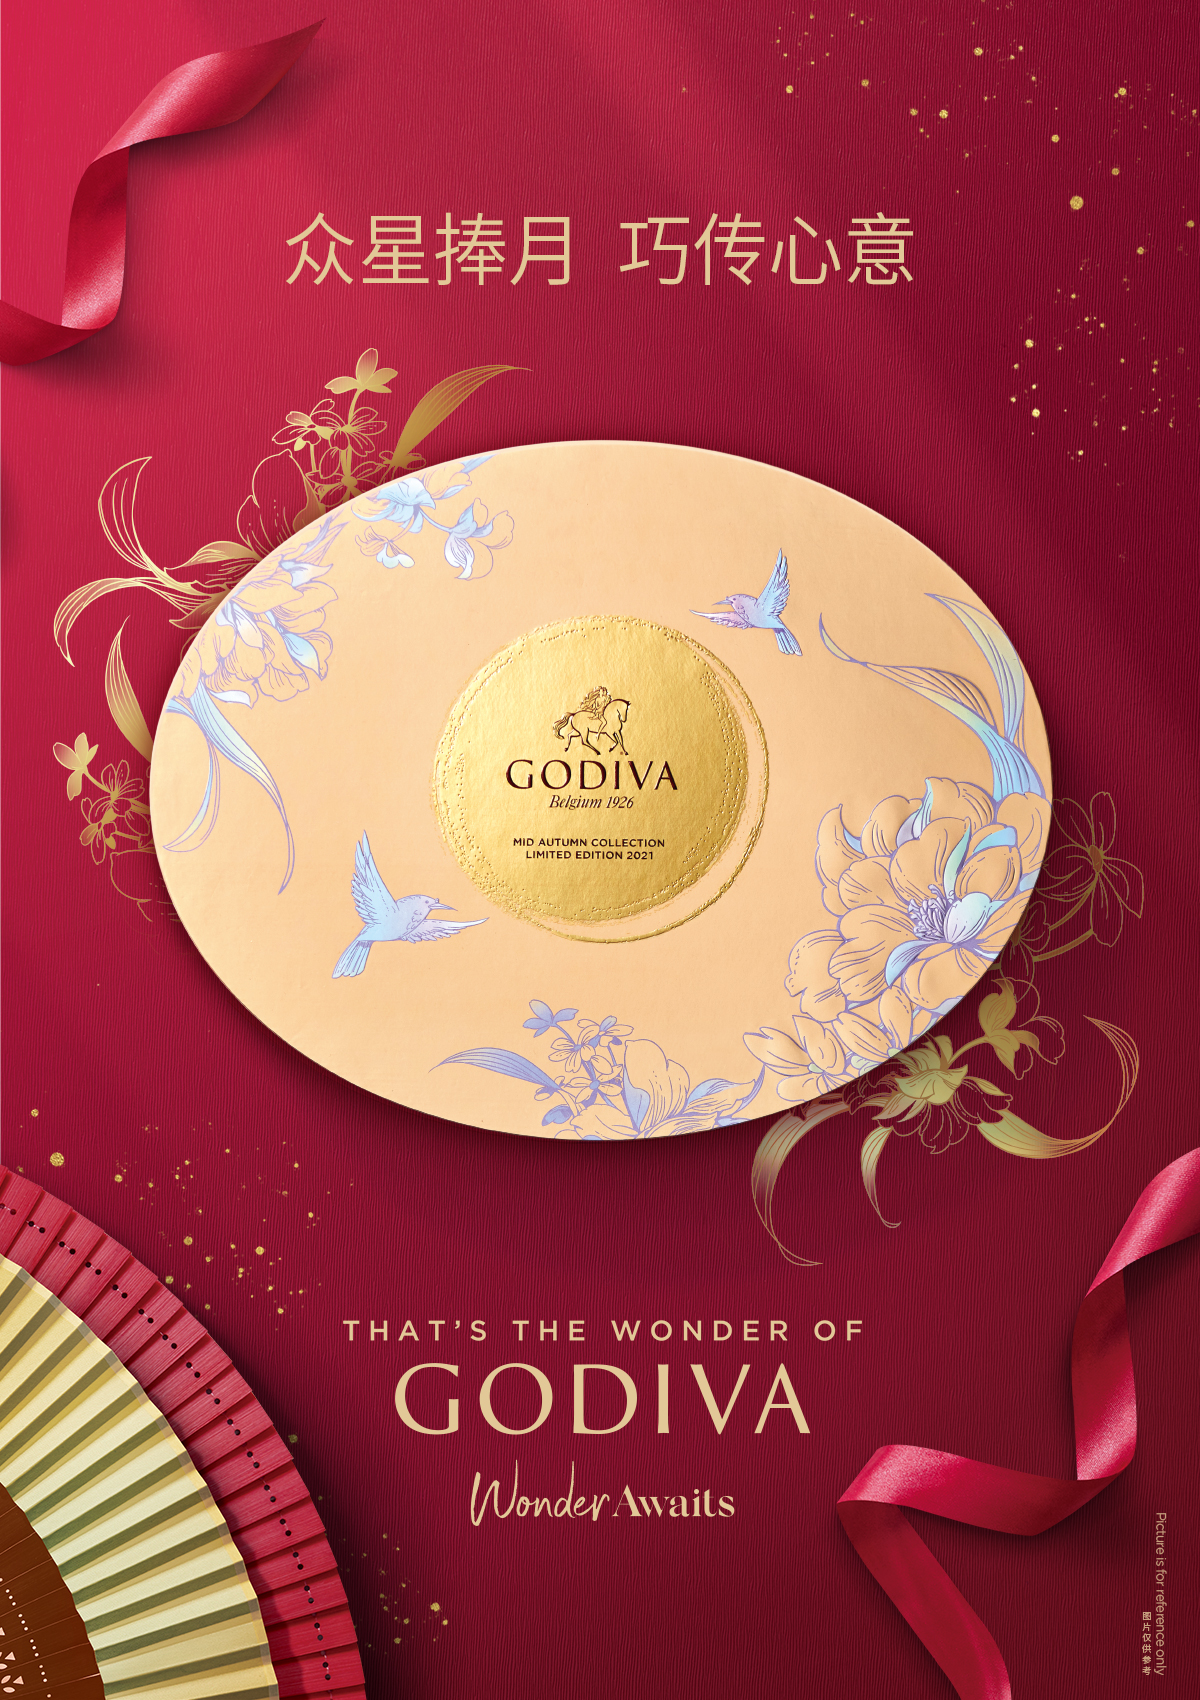 来自比利时皇室御用巧克力 Godiva歌帝梵巧克力网上官方商城